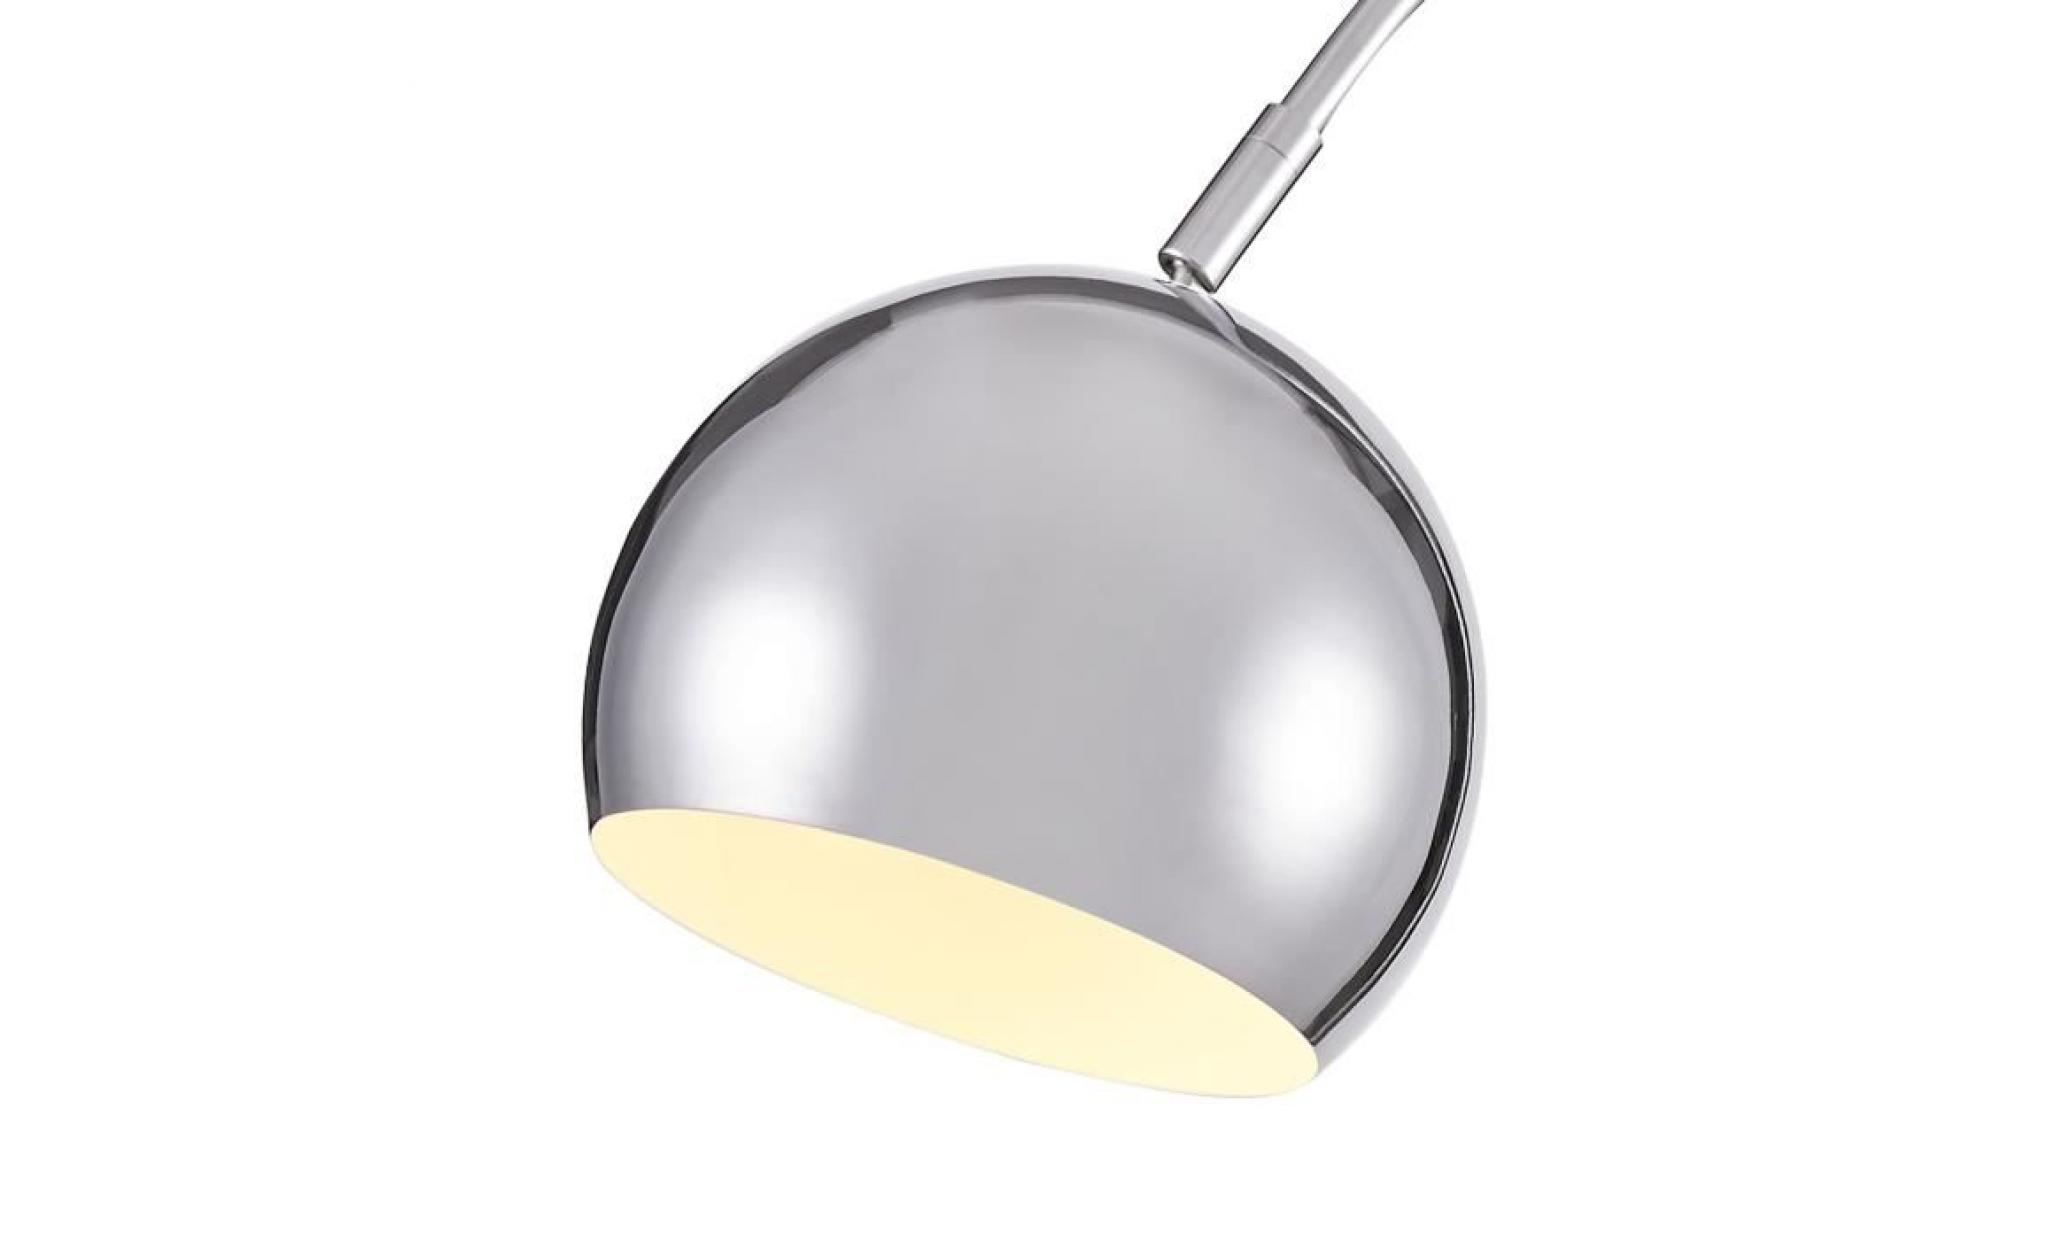 milan lampadaire arc en métal   44x25xh155 cm   gris chromé   base marbre   e14 40w pas cher